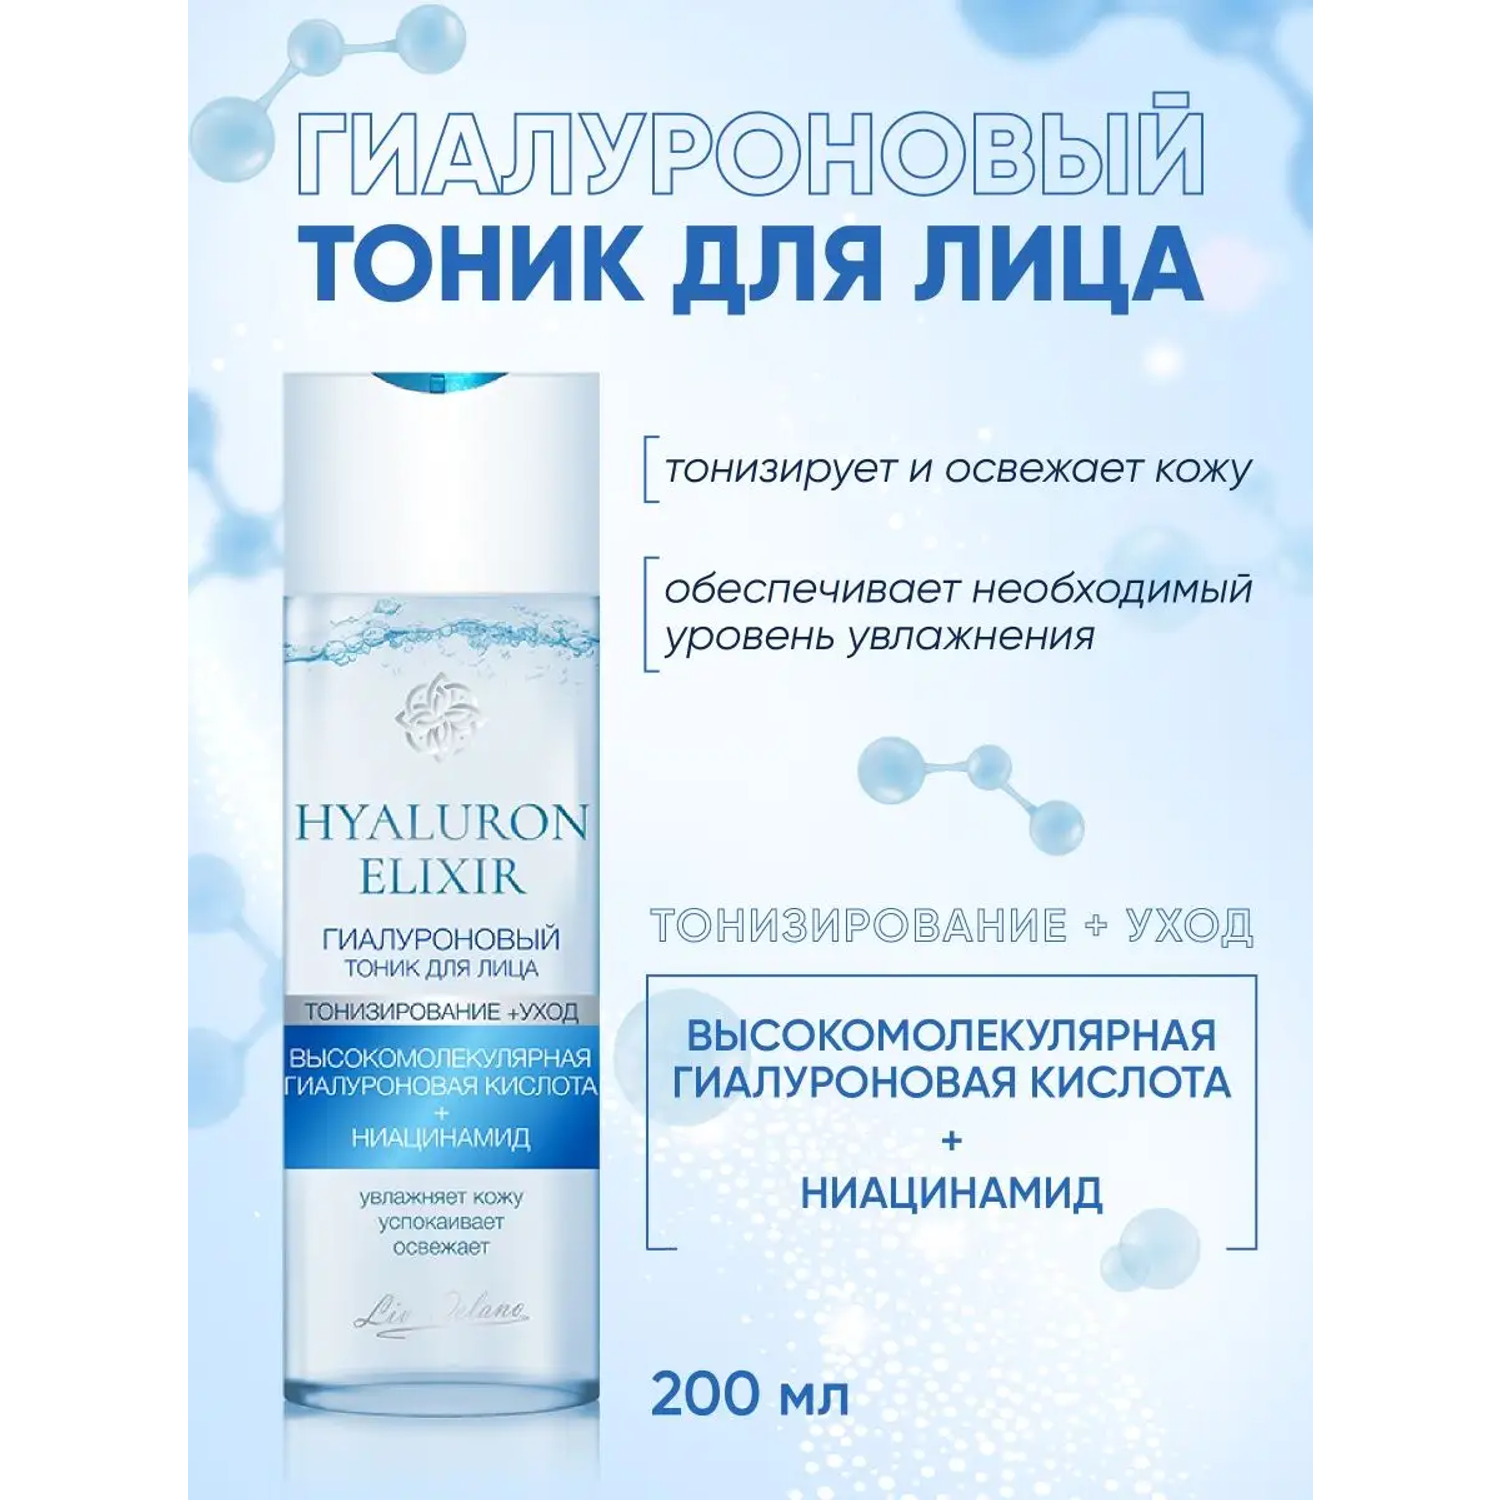 Тоник для лица LIV DELANO Hyaluron elixir Гиалуроновый 200 мл - фото 2